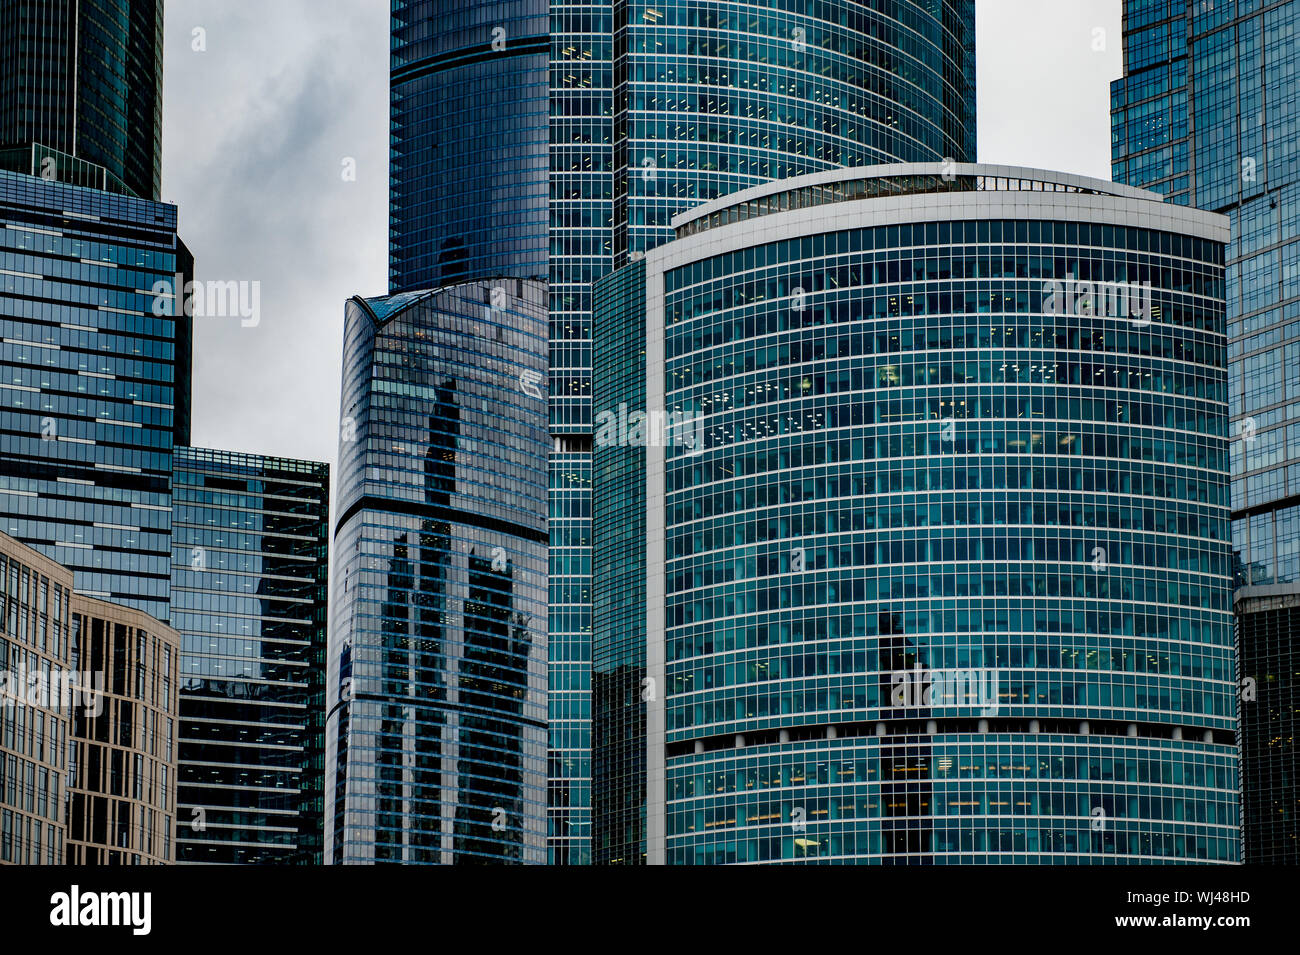 Moskau, Russland, 1. November 2017. Hohe wunderschöne Wolkenkratzer Gebäude der Stadt Moskau International Business Center im Hintergrund der trübes Wetter clo Stockfoto